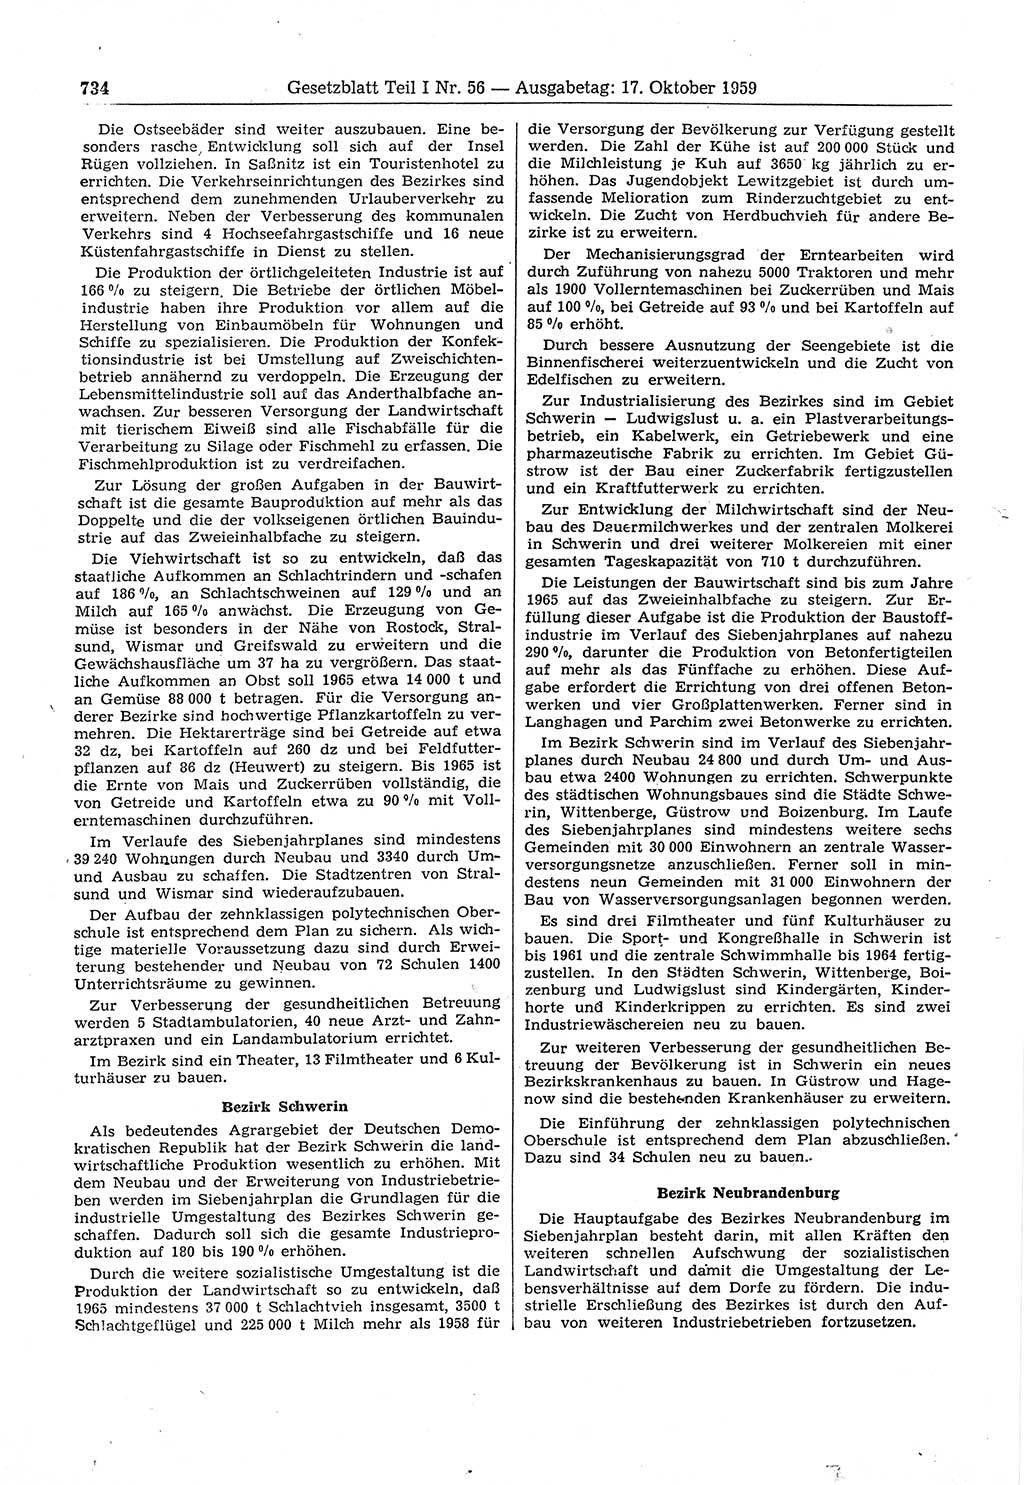 Gesetzblatt (GBl.) der Deutschen Demokratischen Republik (DDR) Teil Ⅰ 1959, Seite 734 (GBl. DDR Ⅰ 1959, S. 734)